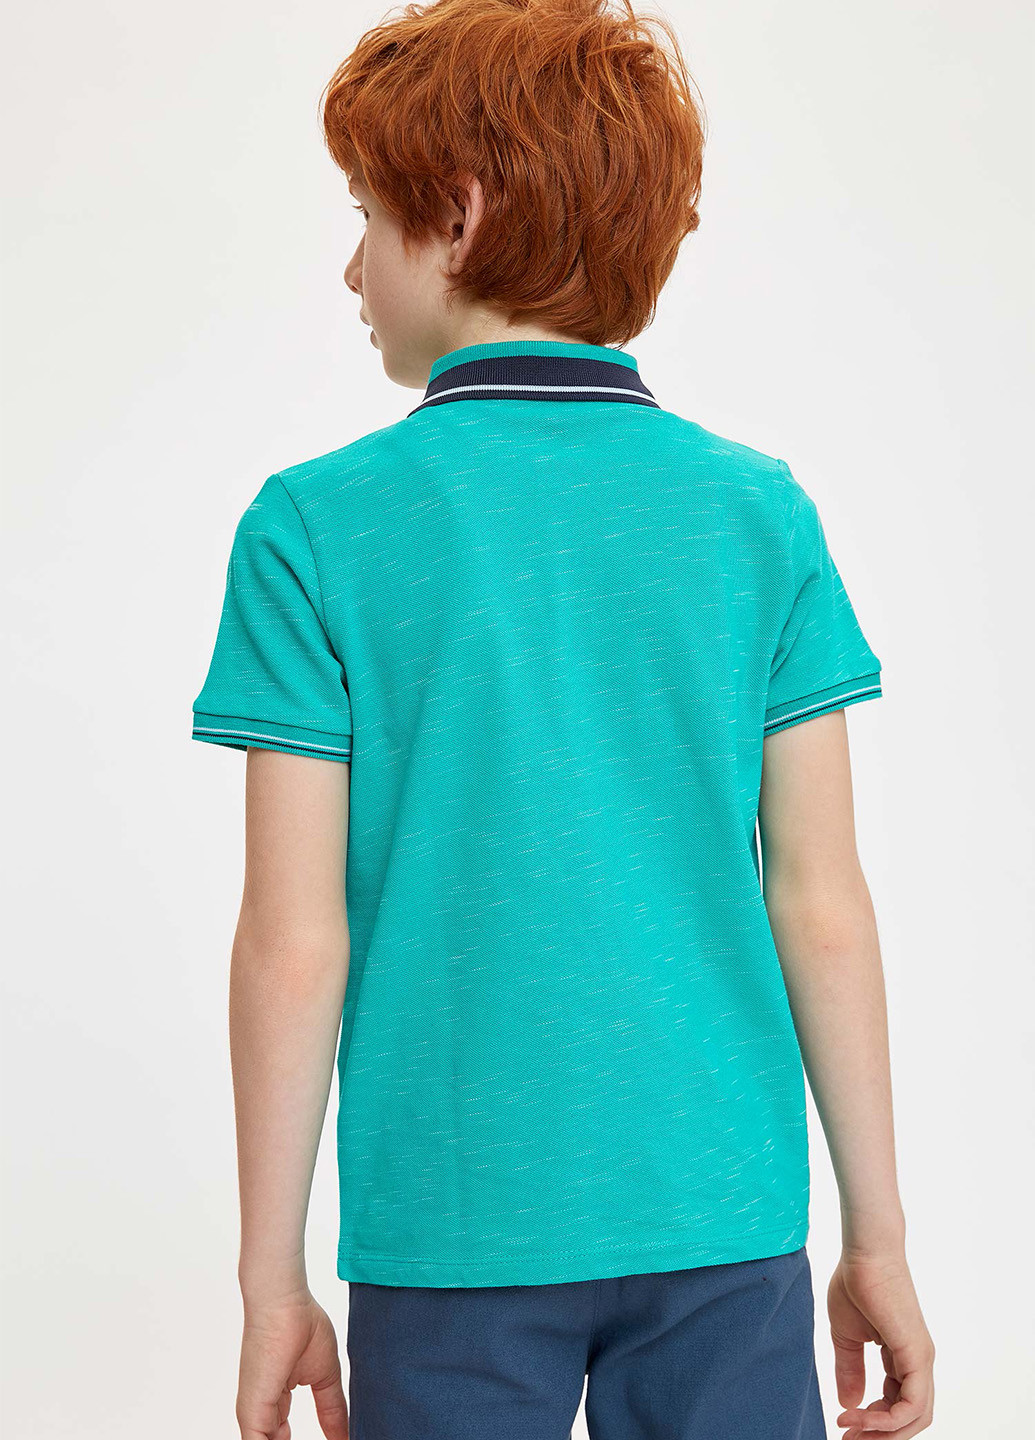 Зеленая детская футболка-поло для мальчика DeFacto с логотипом